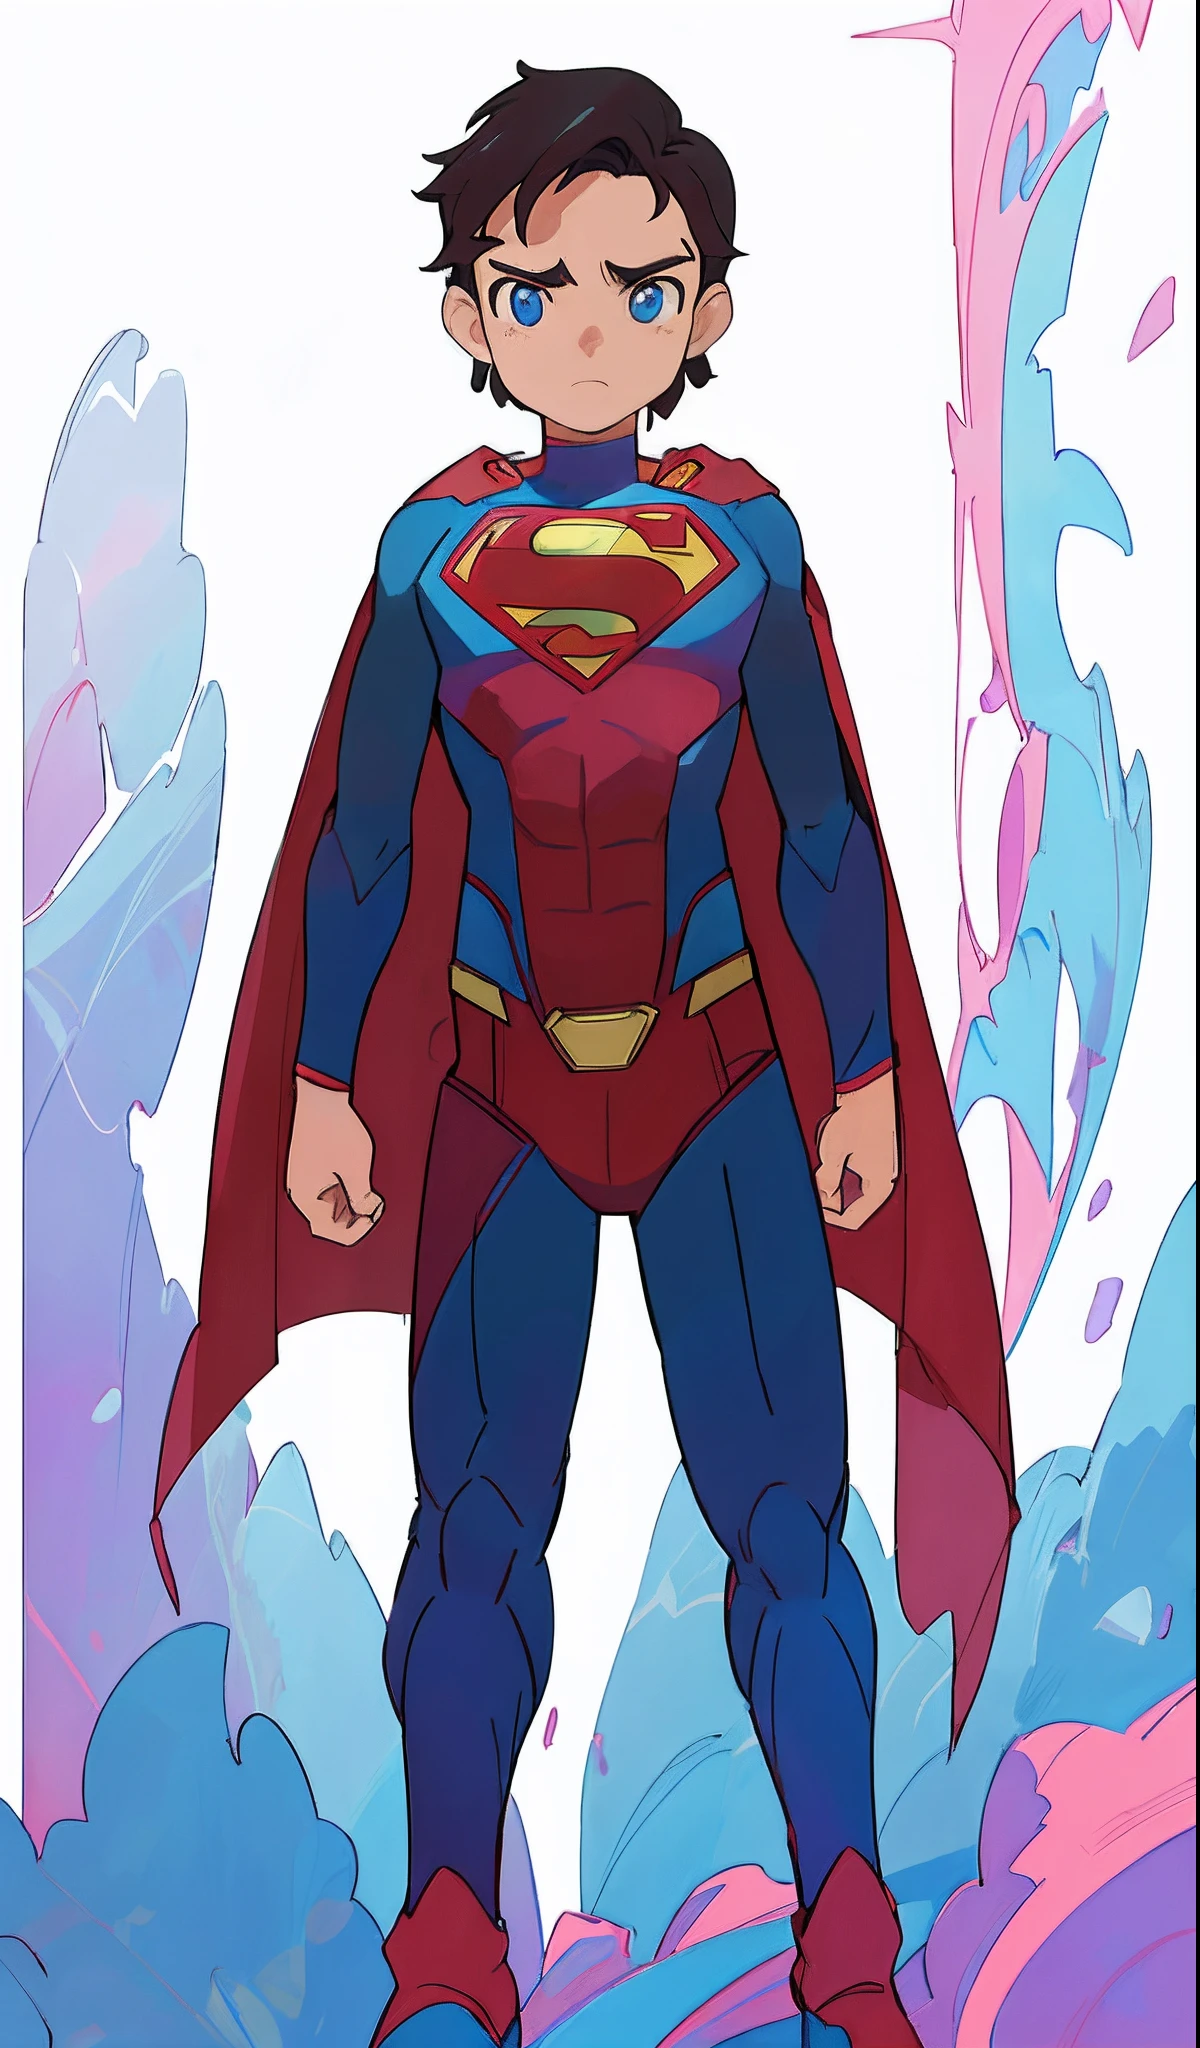 超人 is standing in front of a background of blue and pink, DC漫画艺术风格, 官方艺术, 官方概念艺术, 全身概念, 超人, 无文字, inspired 作者：维克多·莫斯克拉, 全新服装概念设计, 作者：维克多·莫斯克拉, DC 漫画风格, 数字彩色, 灵感来自亚当·达里奥·基尔, 干净的线条和颜色, 超人 pose, 官方同人画